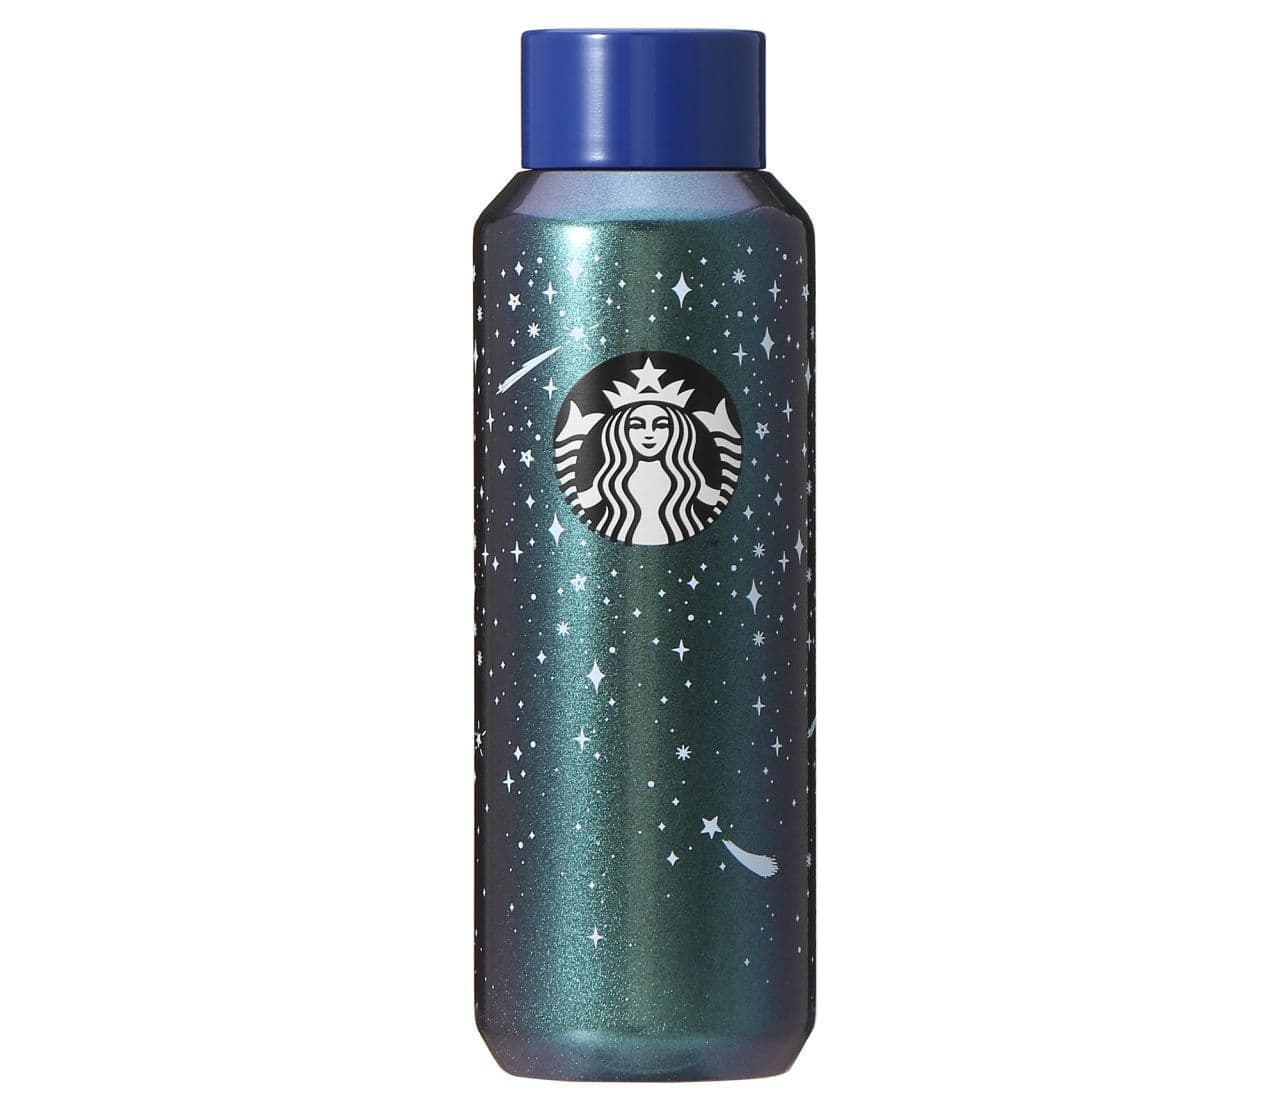 Starbucks "Stainless Steel Bottle Shooting Star 473ml